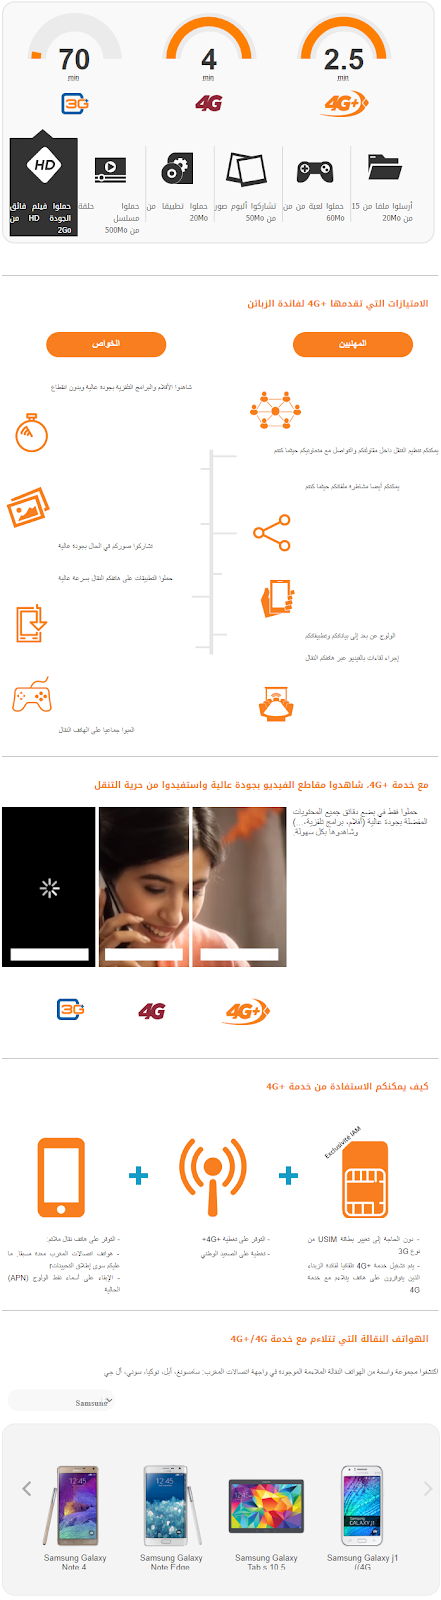 انفوجرافيك الجيل الرابع 4G+ إتصالات المغرب 